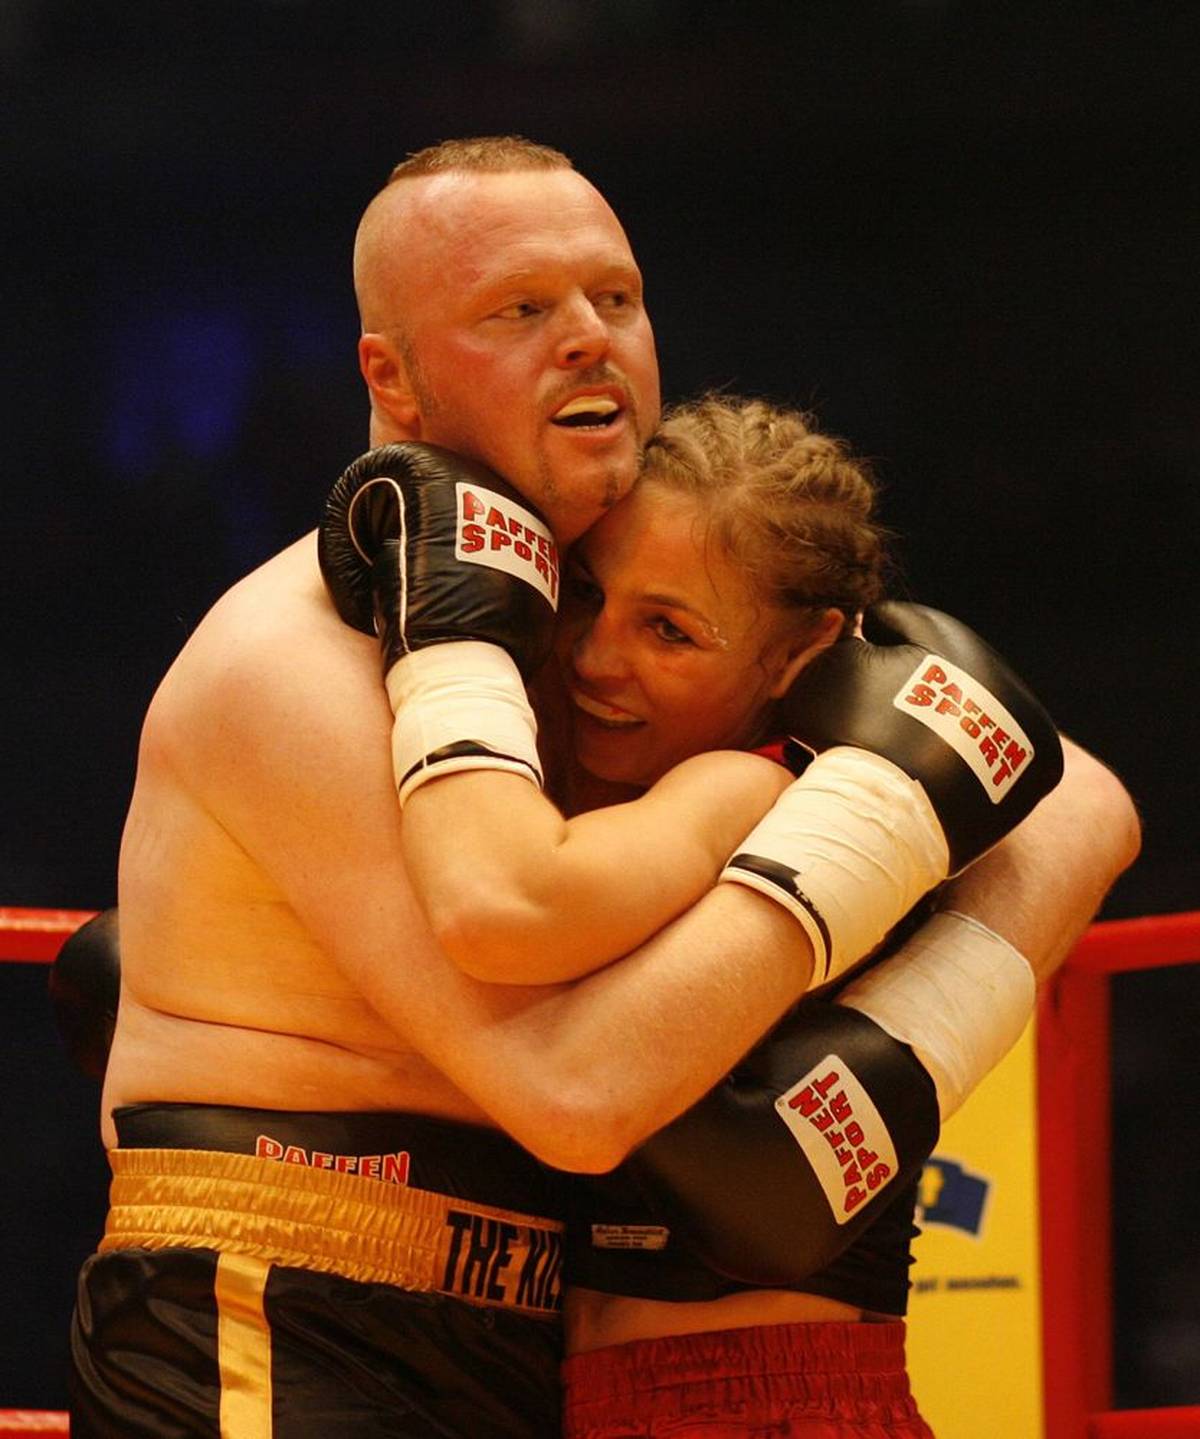 Stefan Raab et Regina Halmich lors de leur deuxième combat de boxe en 2007 à Cologne